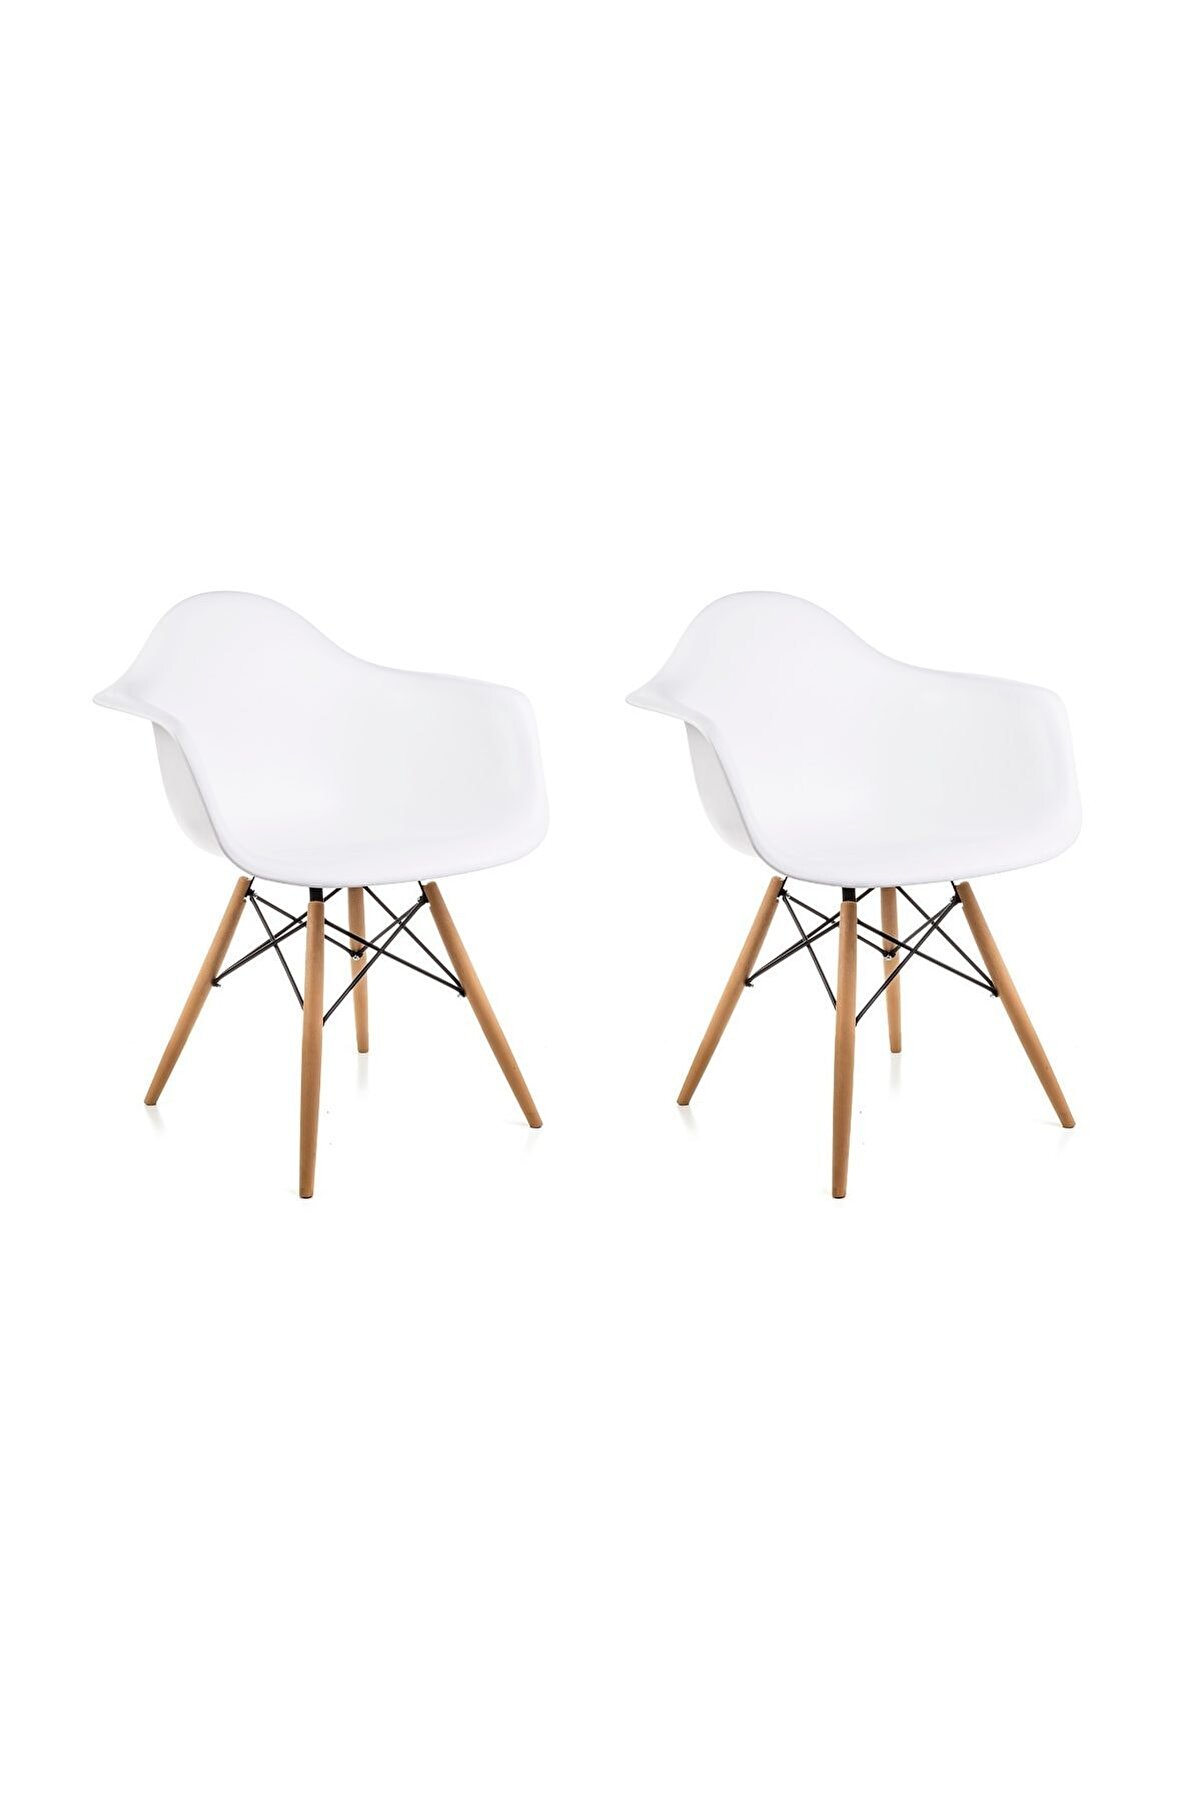 Dorcia Home Kolçaklı Beyaz Eames Sandalye - 2 Adet - Cafe Balkon Mutfak Sandalyesi